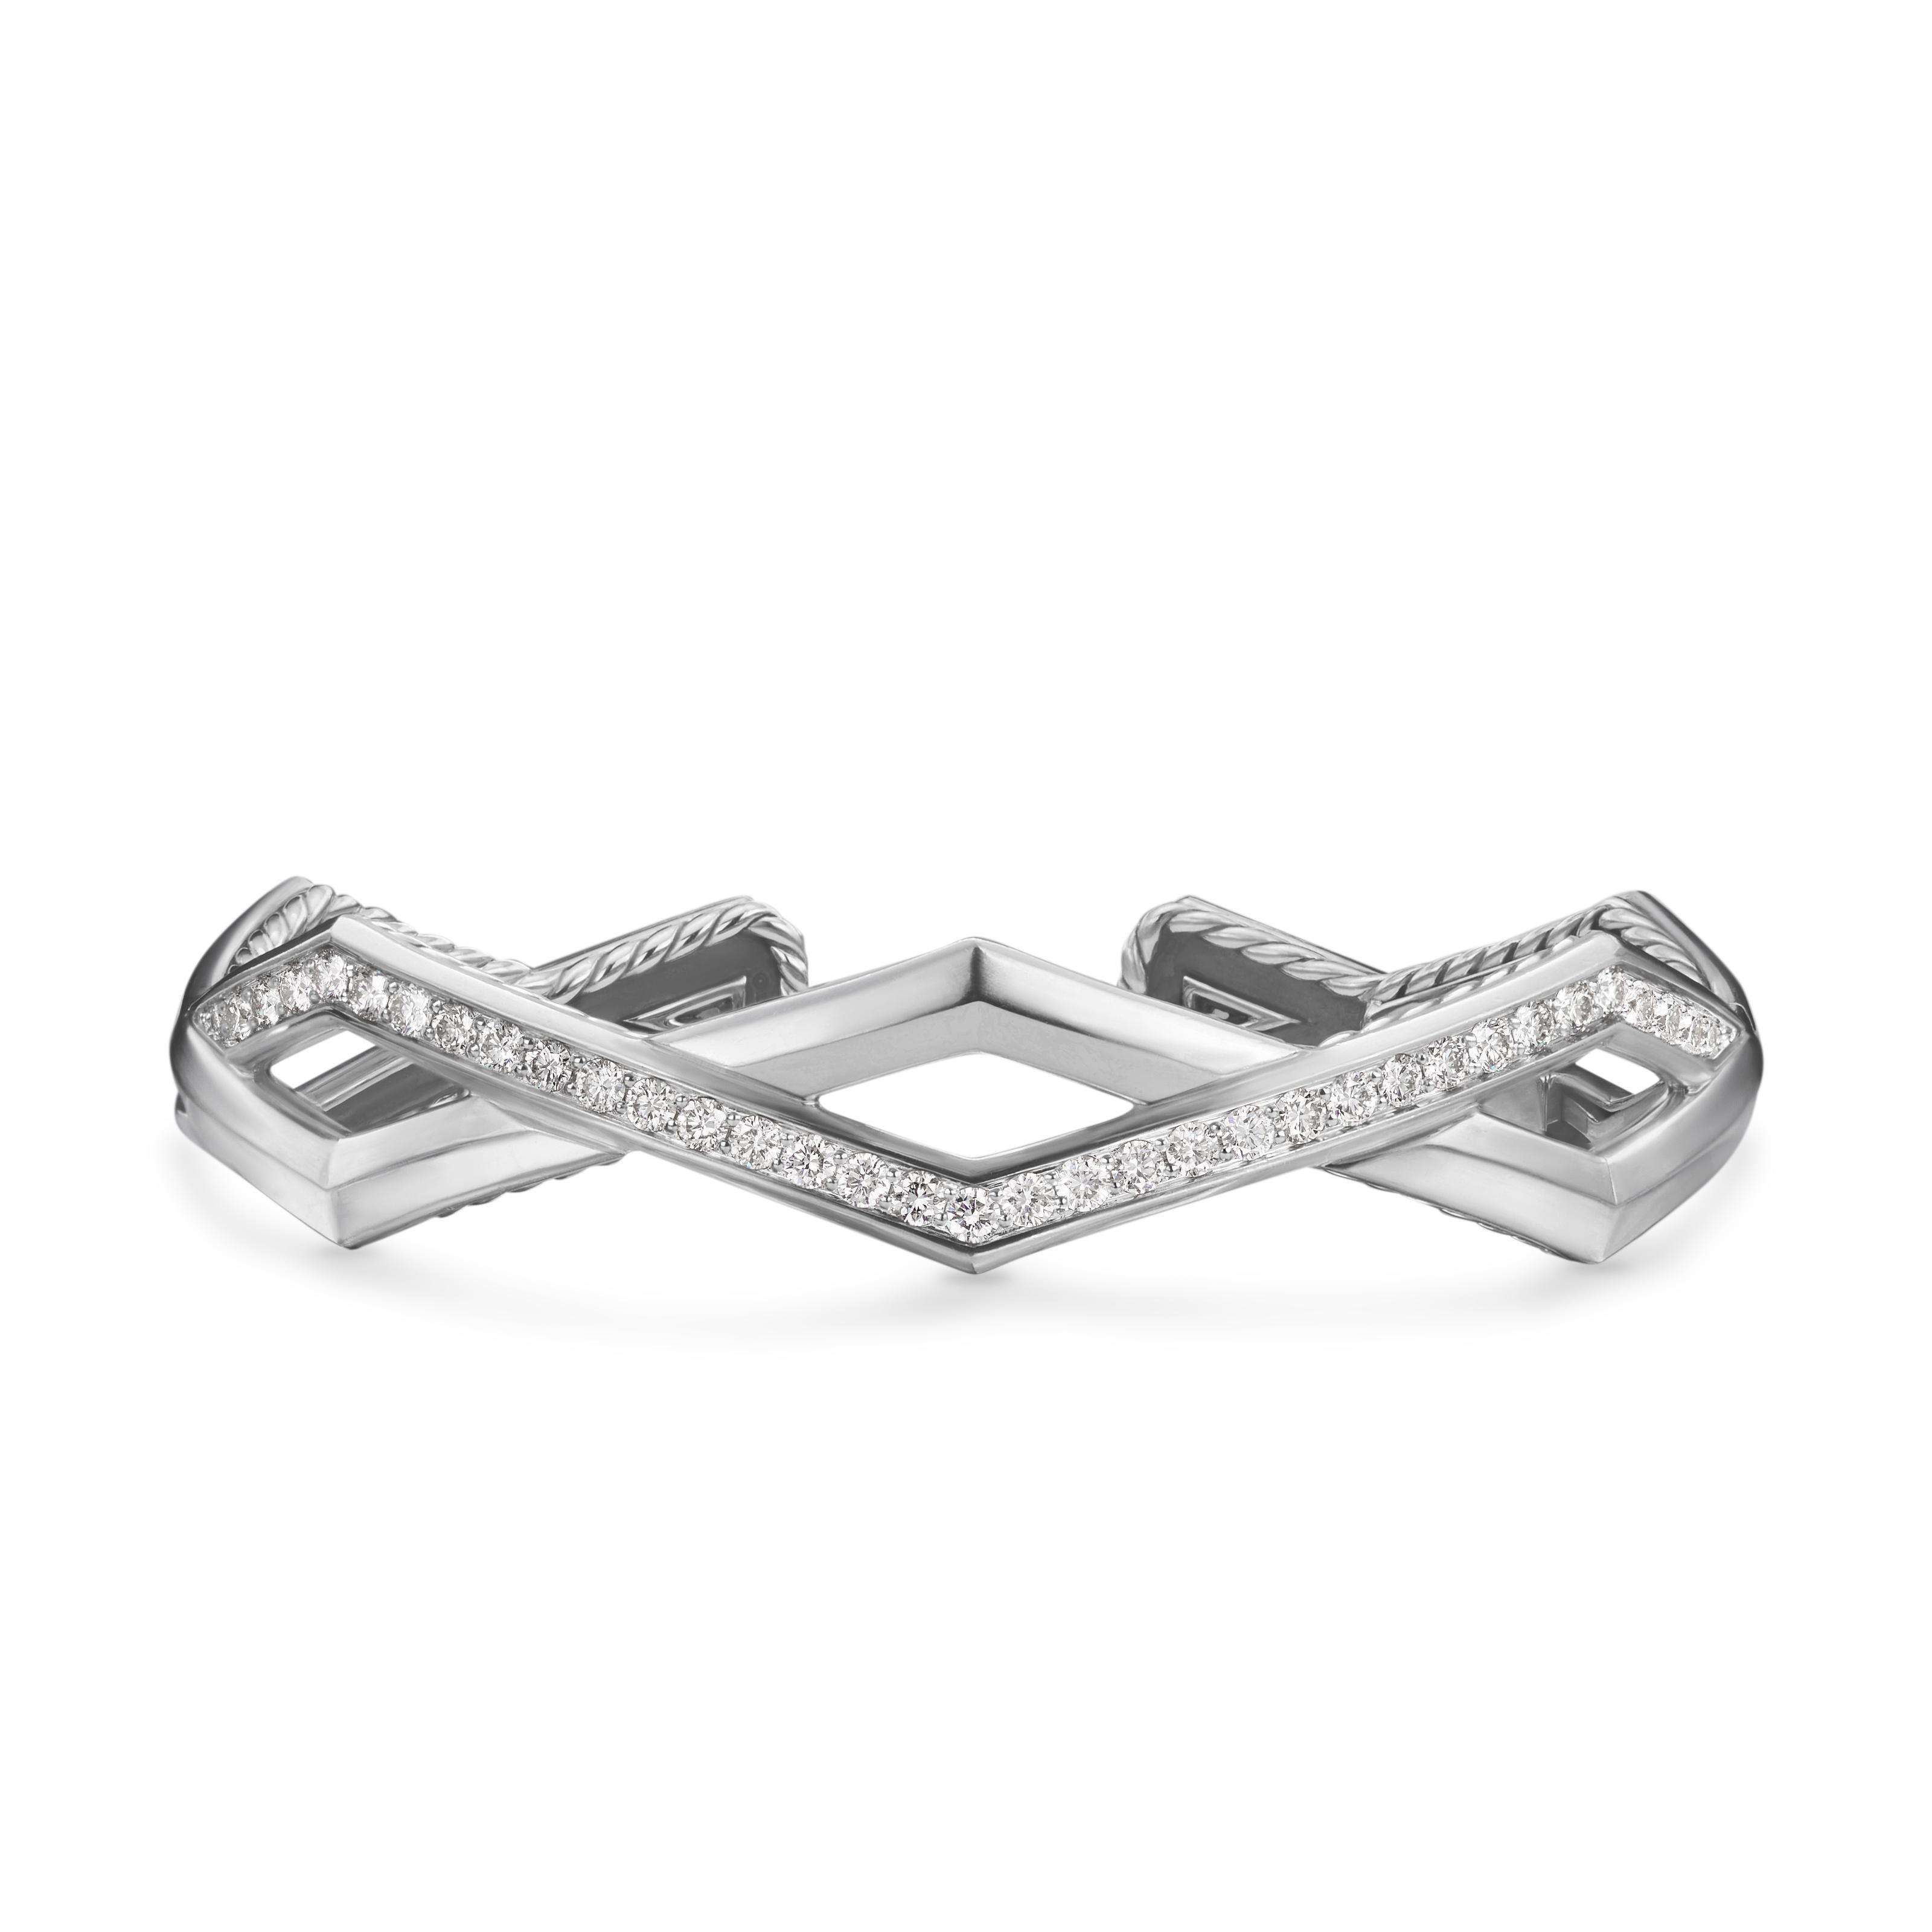 David Yurman Zig Zag Stax Two Row Cuff Bracelet in Sterling Silver with Diamonds 0